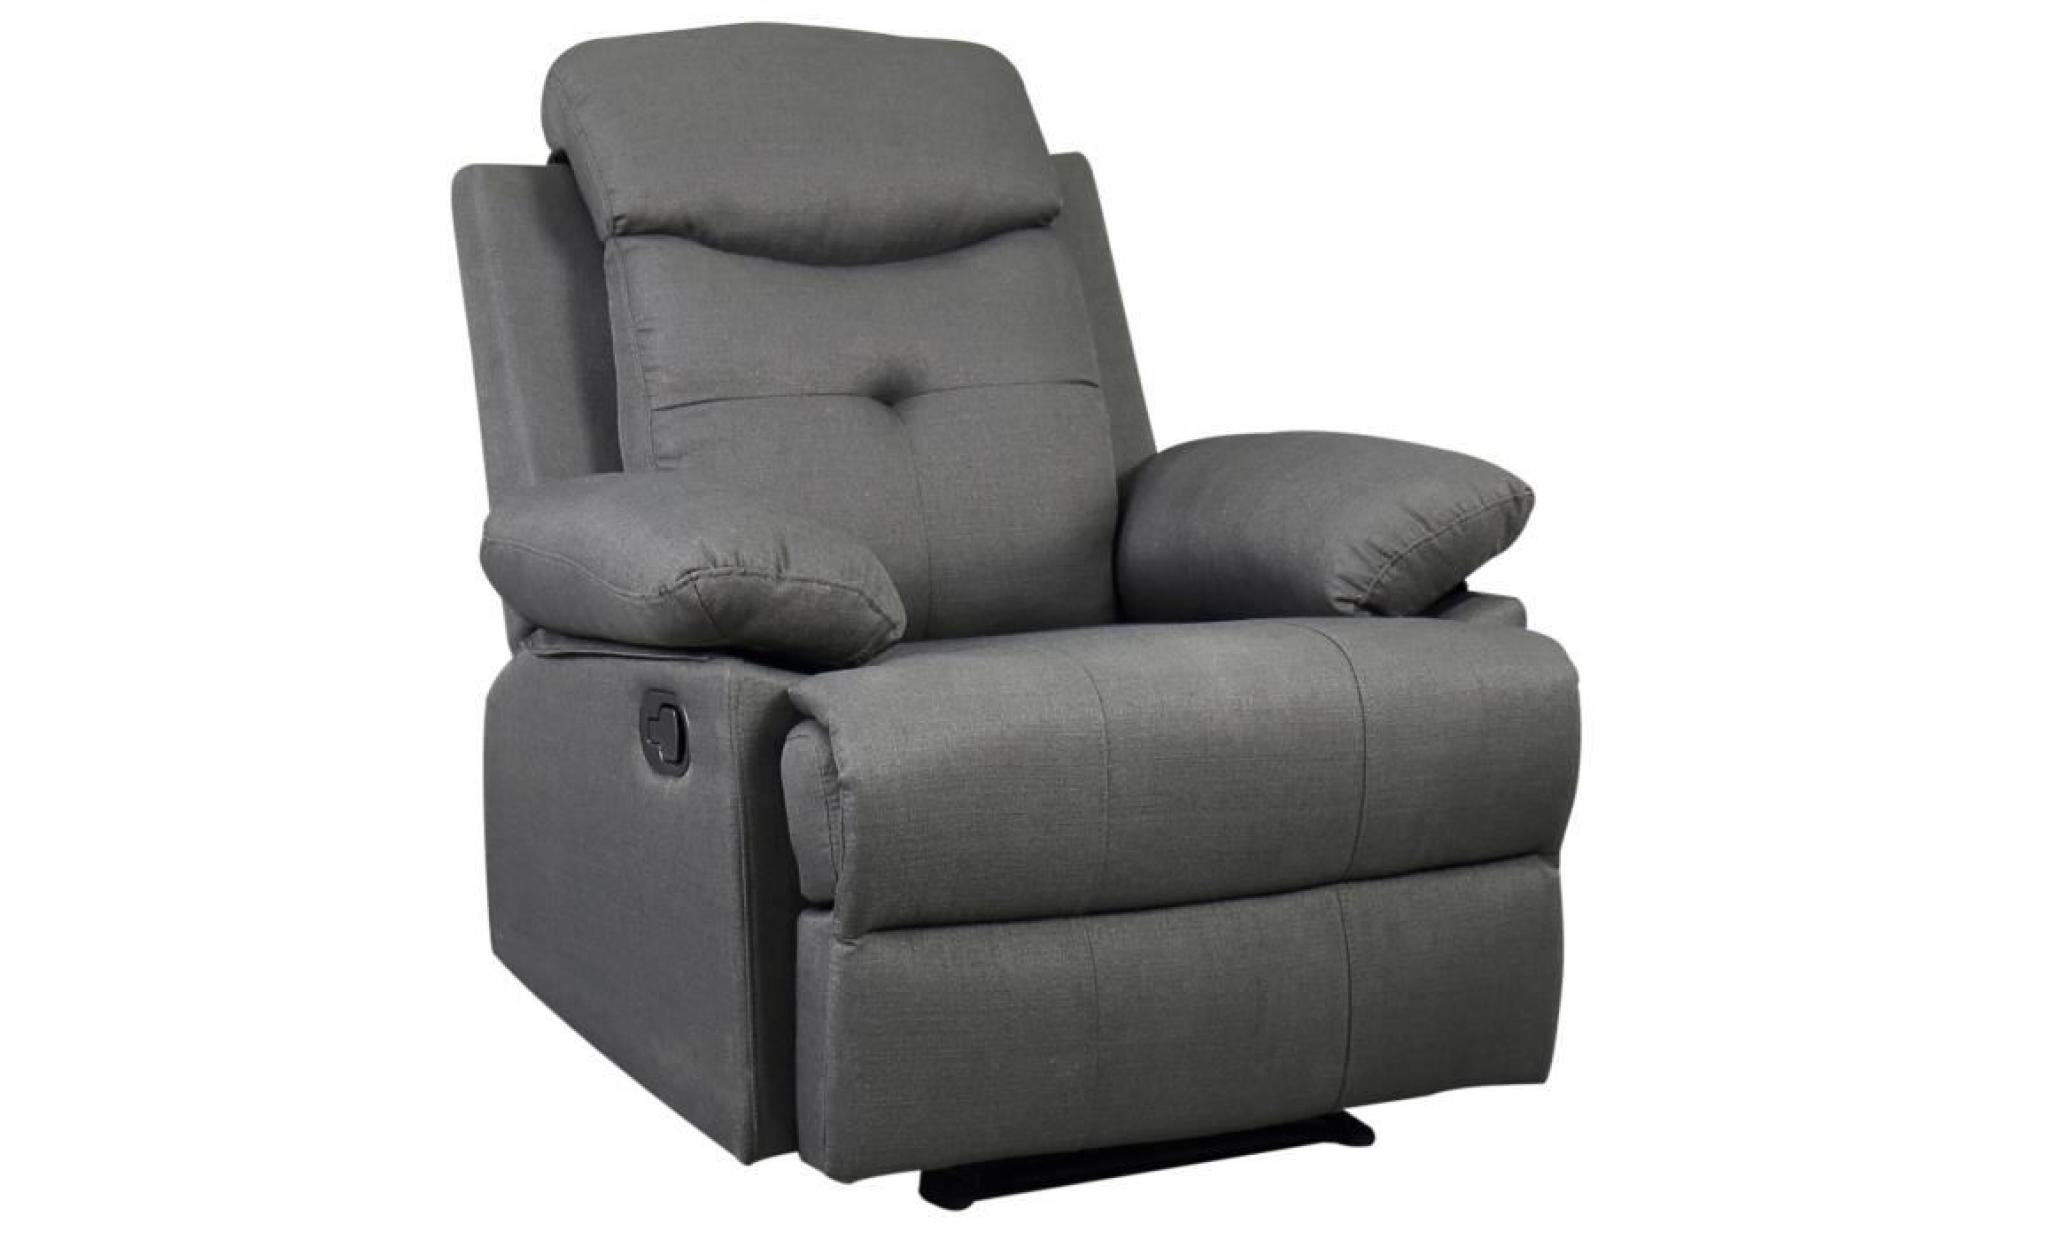 fauteuil de relaxation design contemporain dossier inclinable repose pied intégré ajustable revêtement tissu lin gris 84x95x97cm